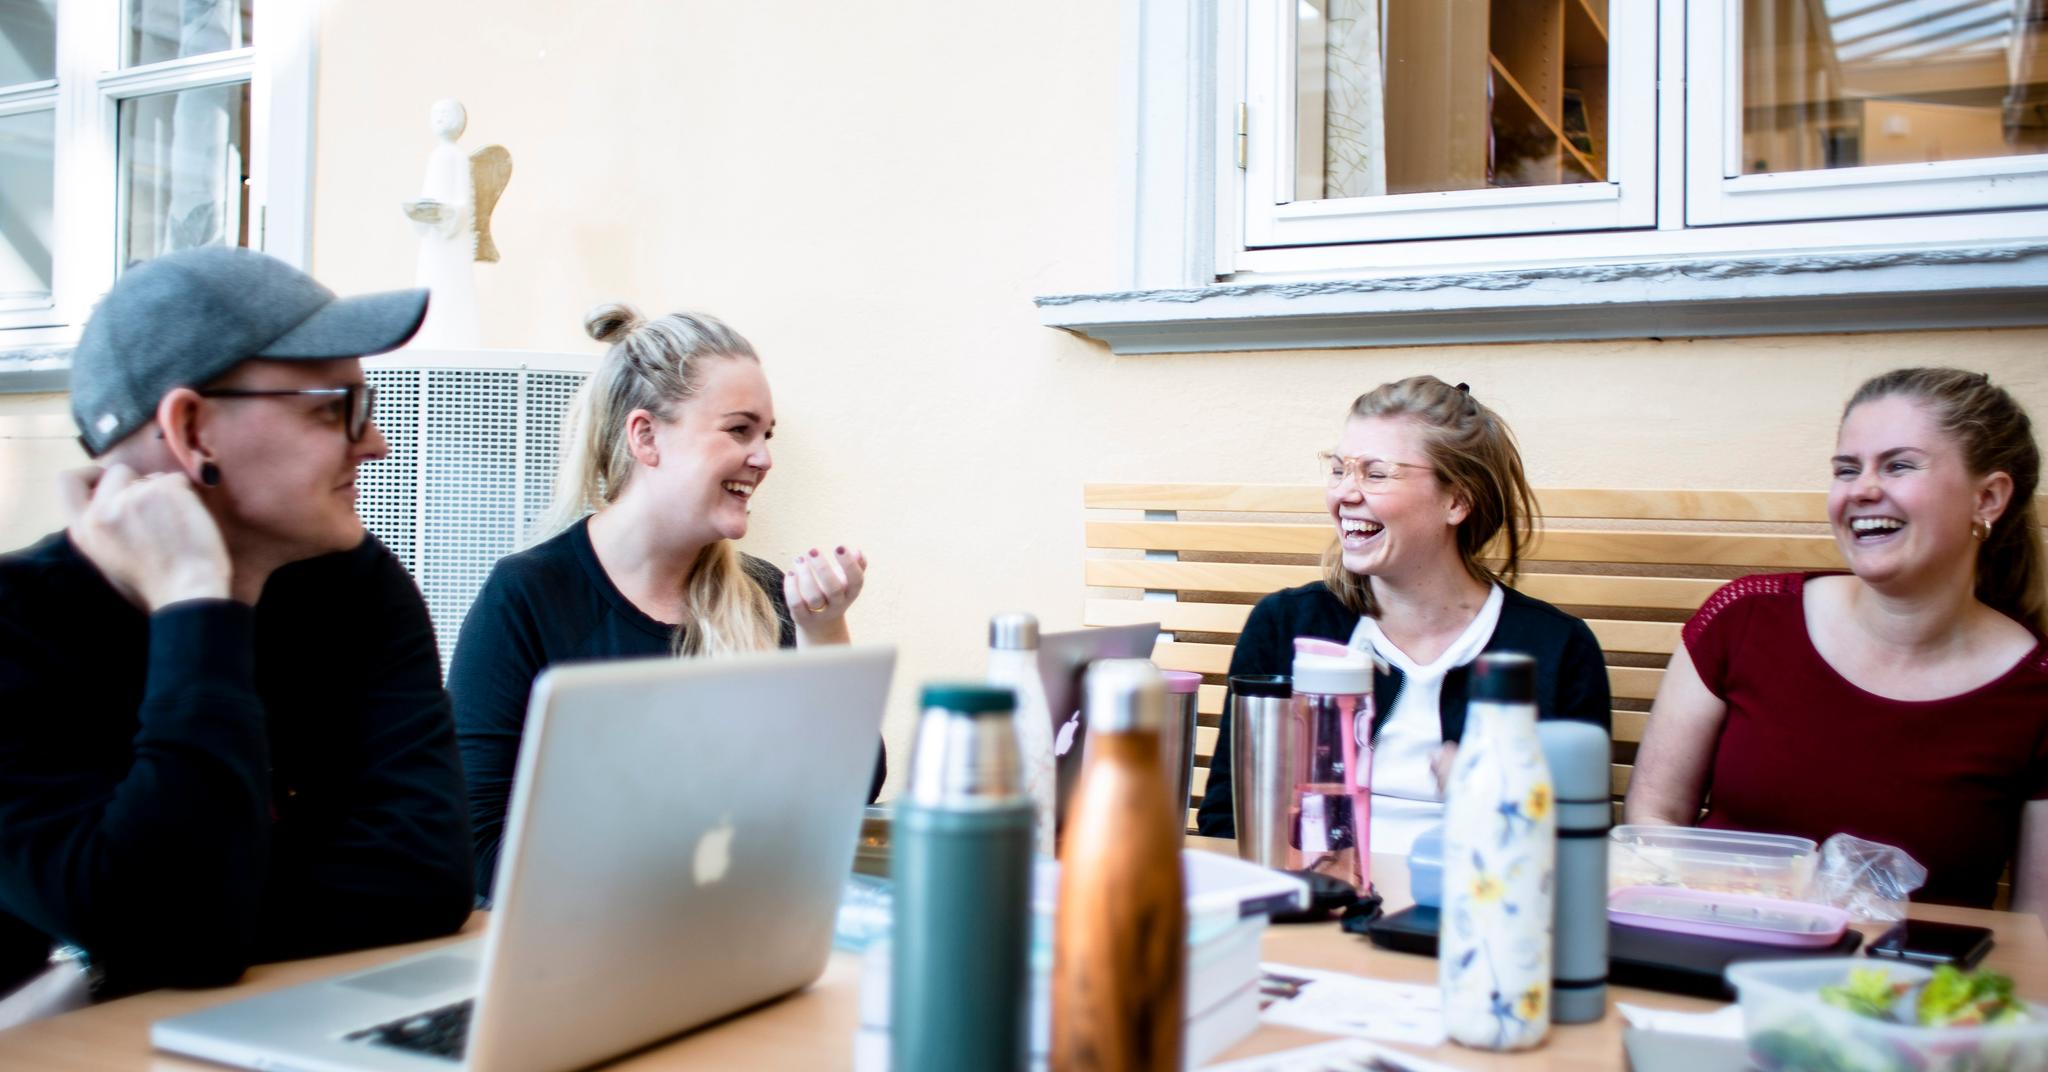 Sebastian Hasle Enghaug (28), Camilla Braaten Christiansen (27), Caroline Olving (27) og Tori Enoksen Ristesund (21) bruker medier ulikt, men kjenner igjen funnene blant unge de kjenner.